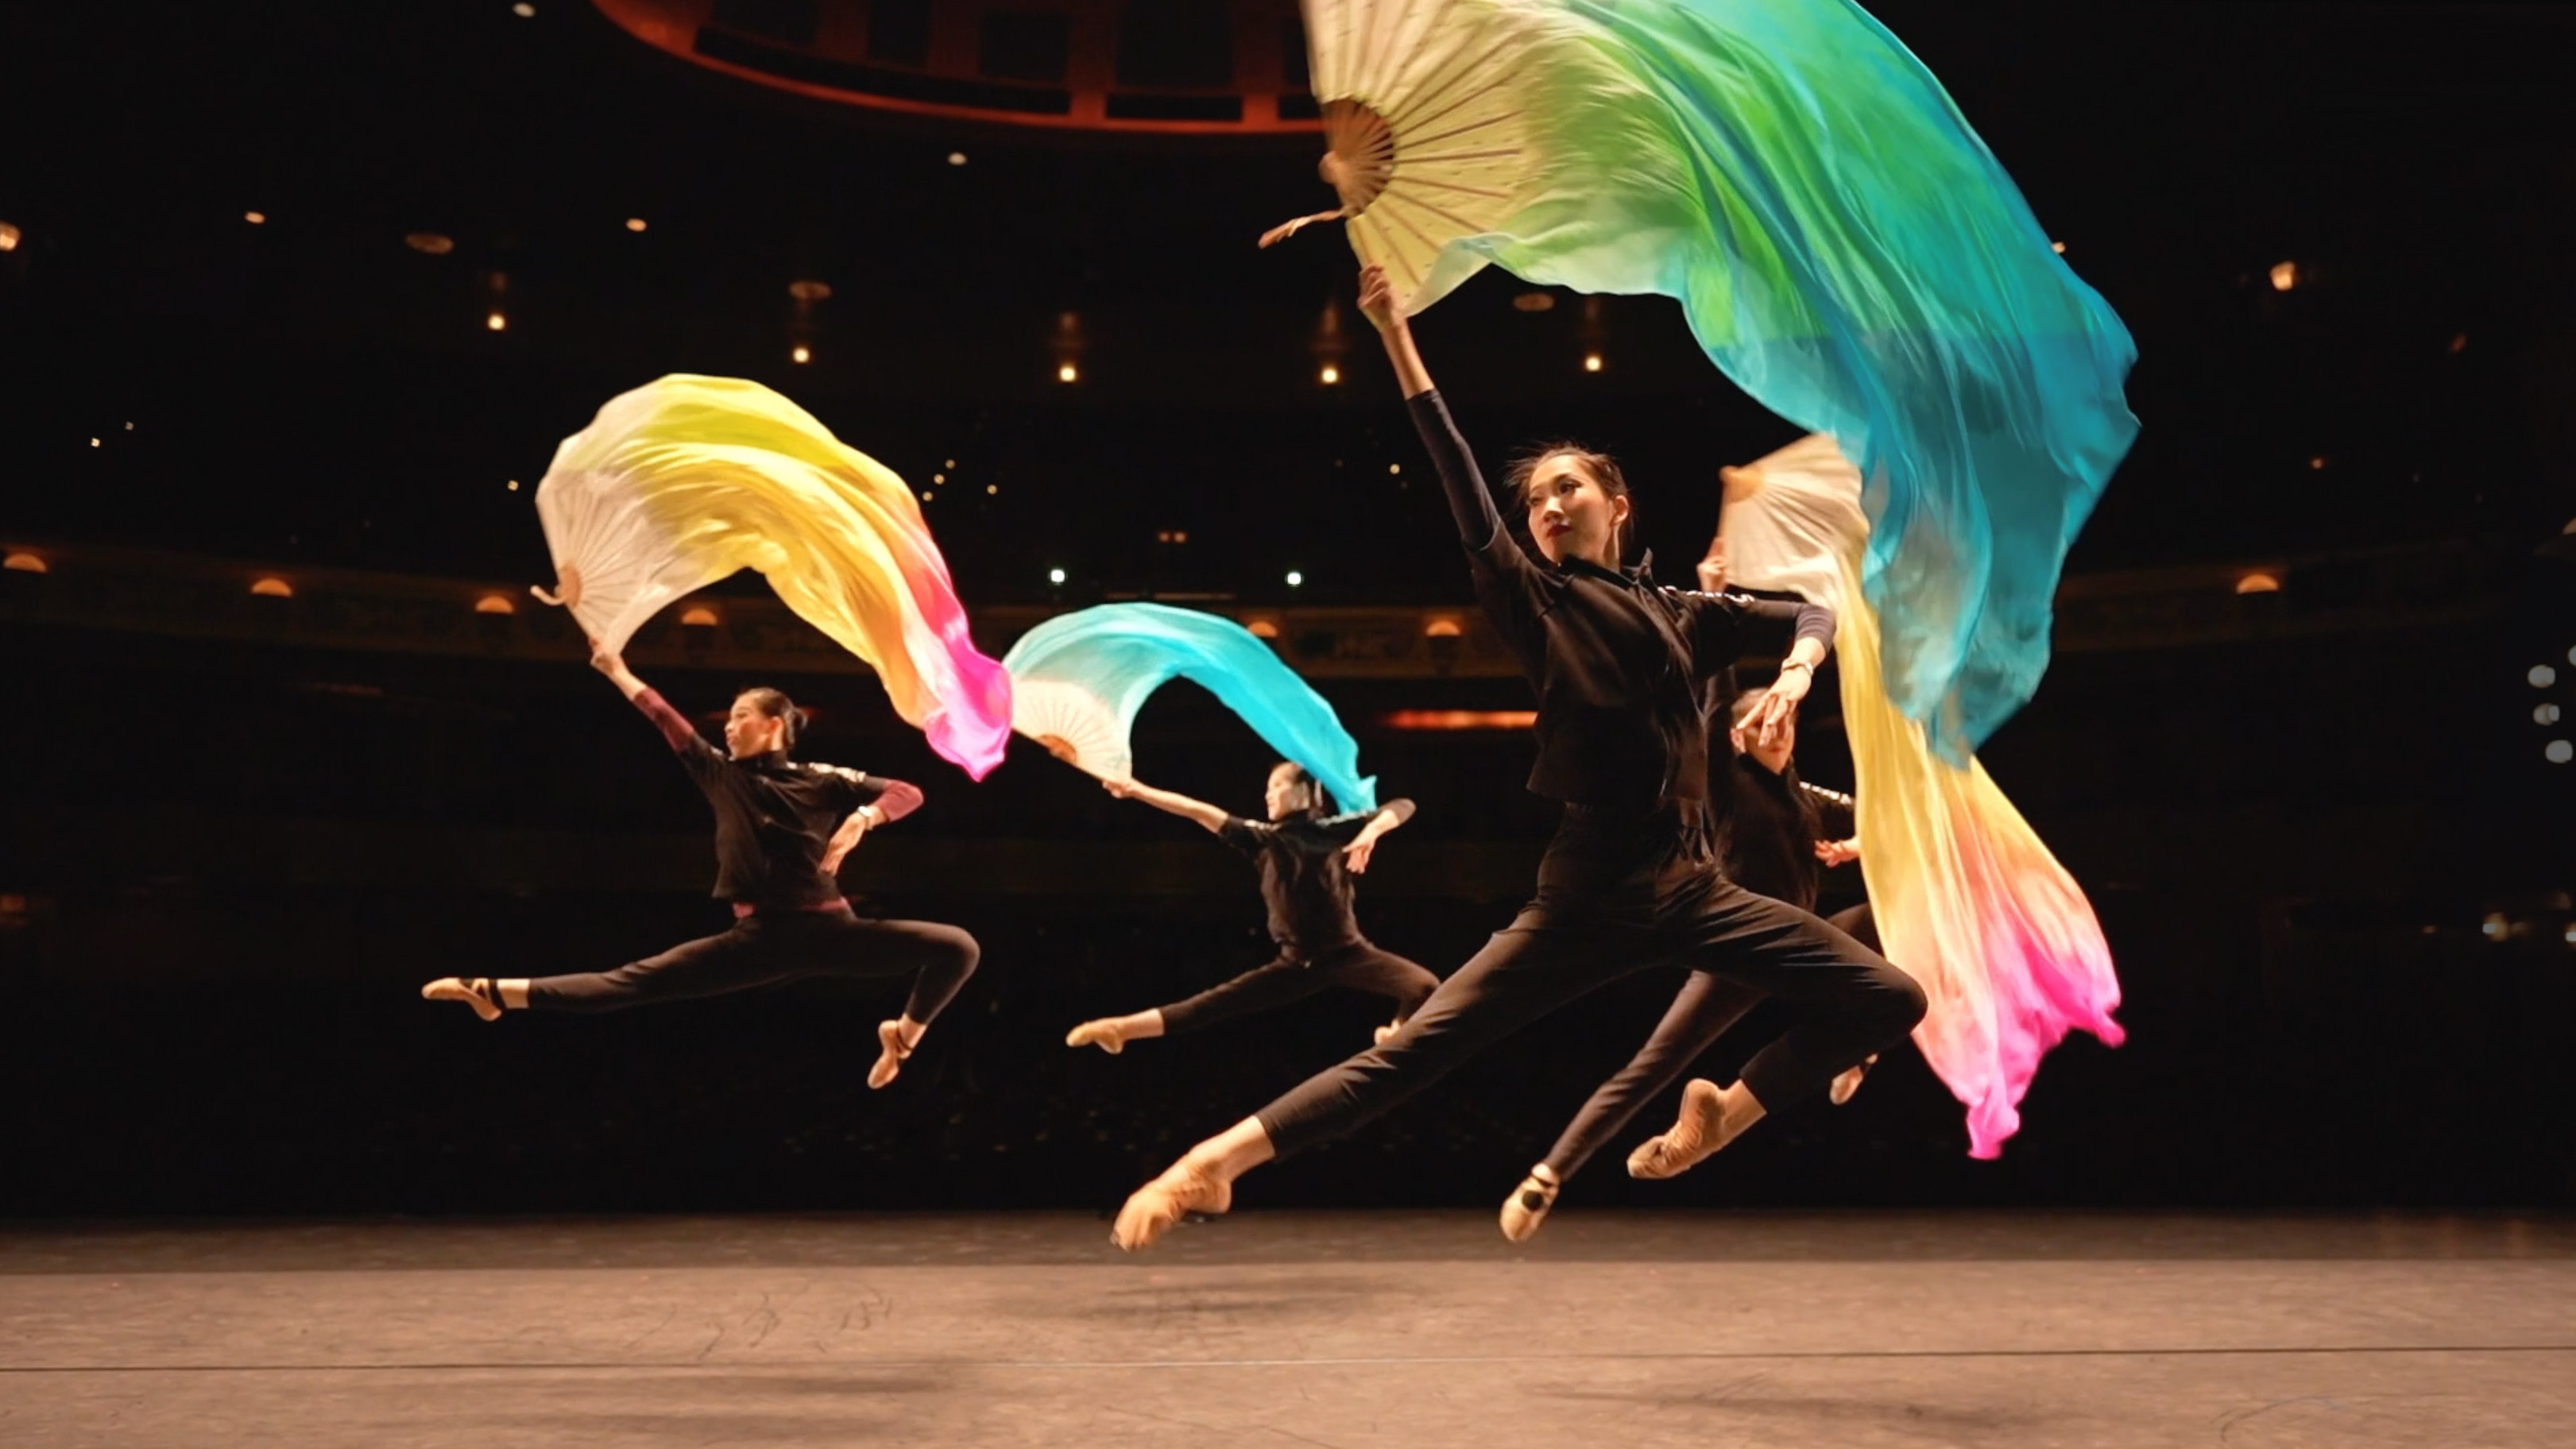 Rippling Swirls - Shen Yun dance performance